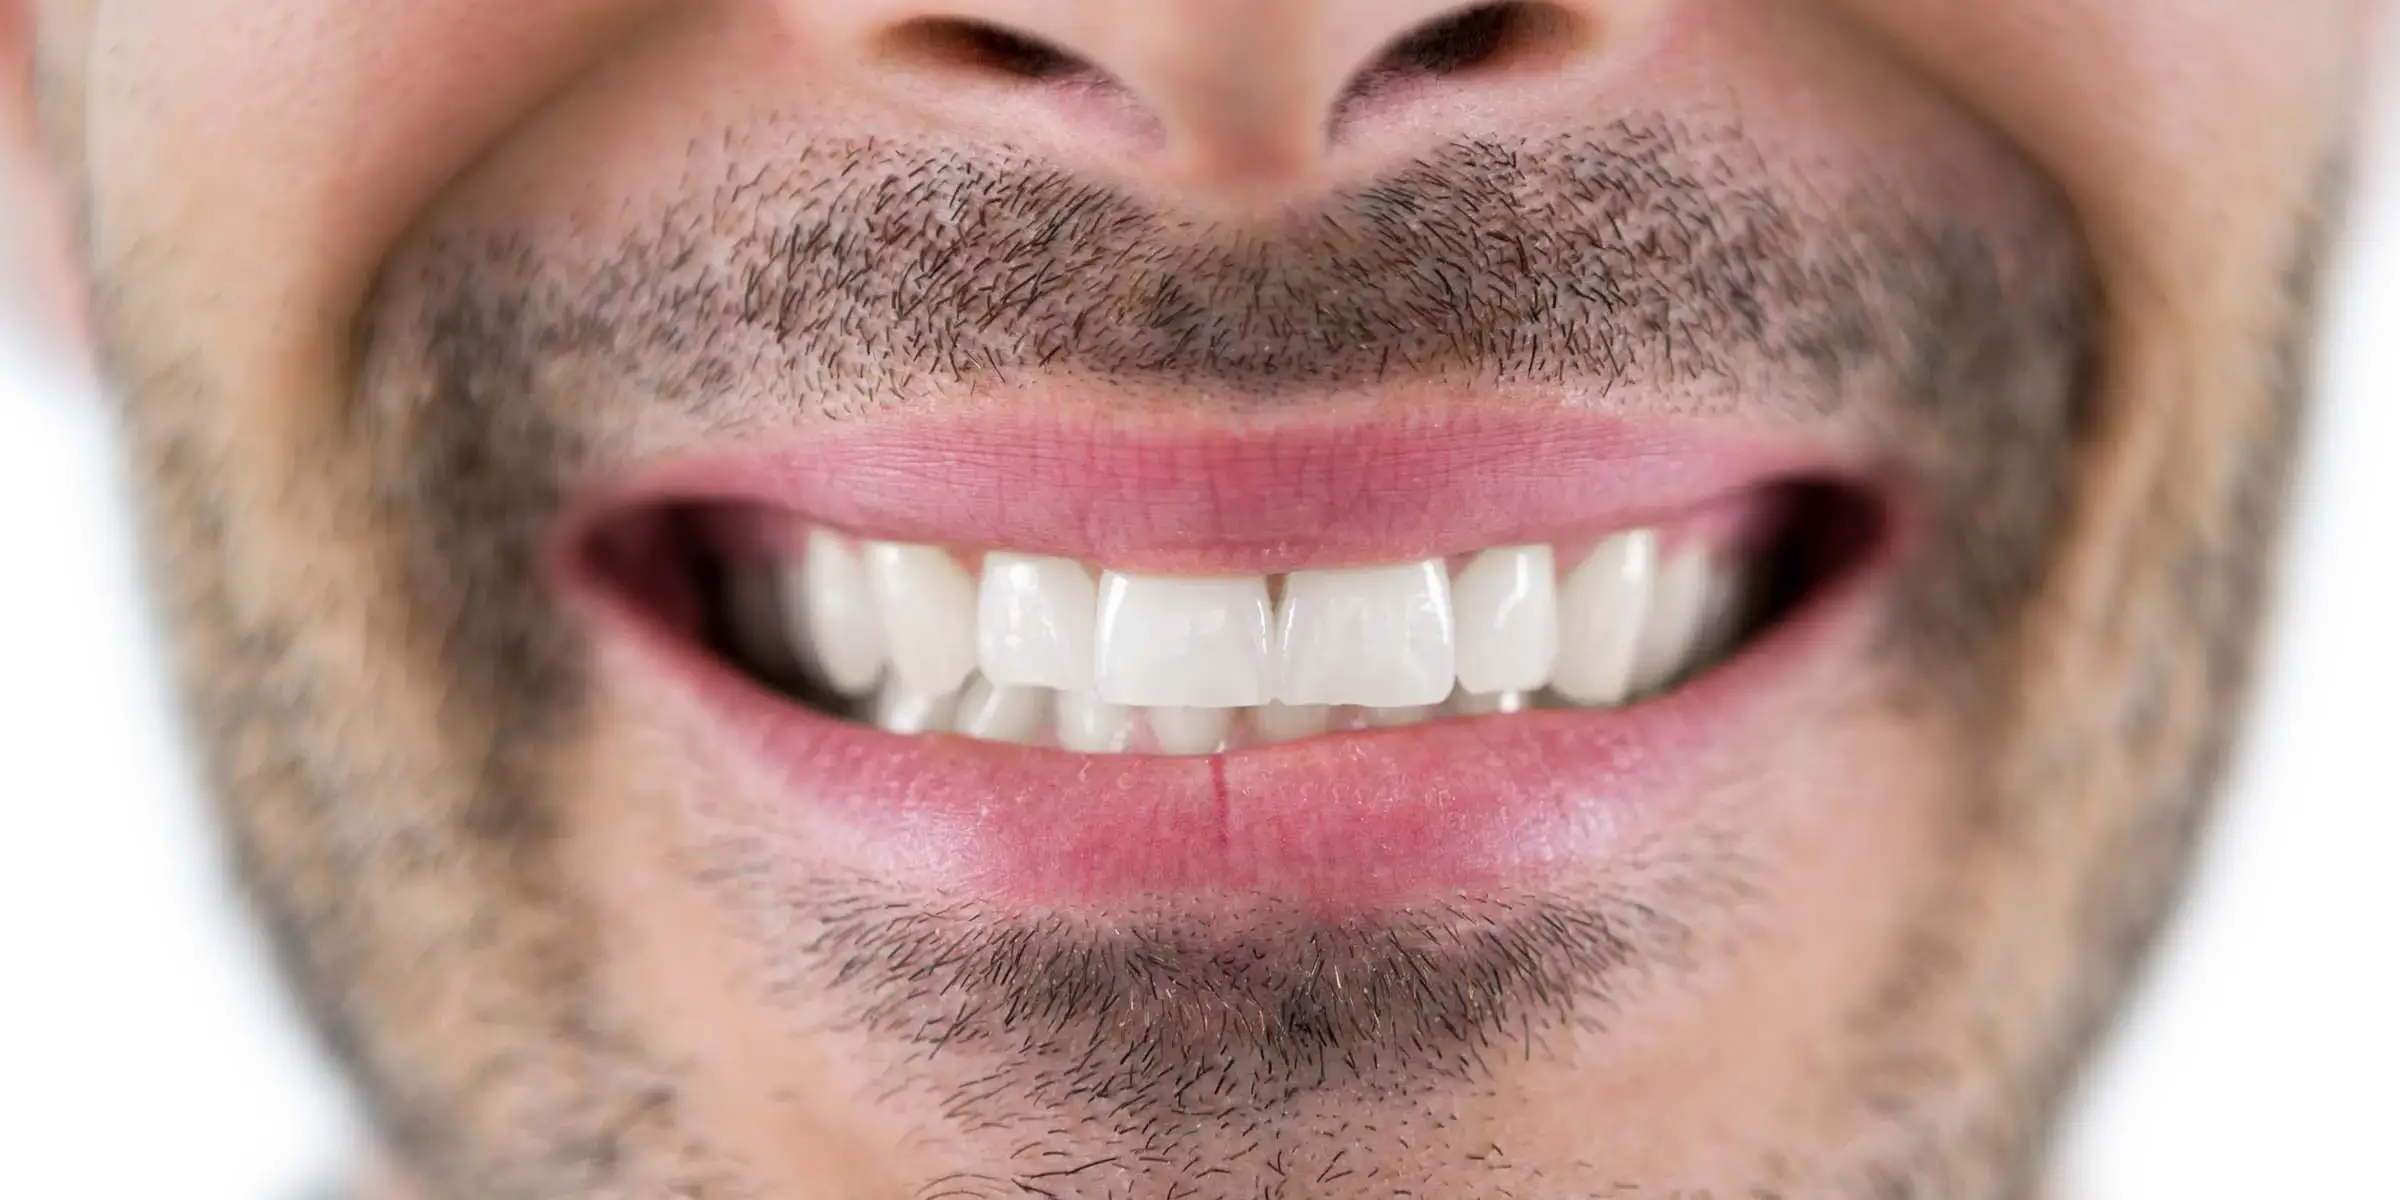 man-showing-his-teeth4-YUFNXWG